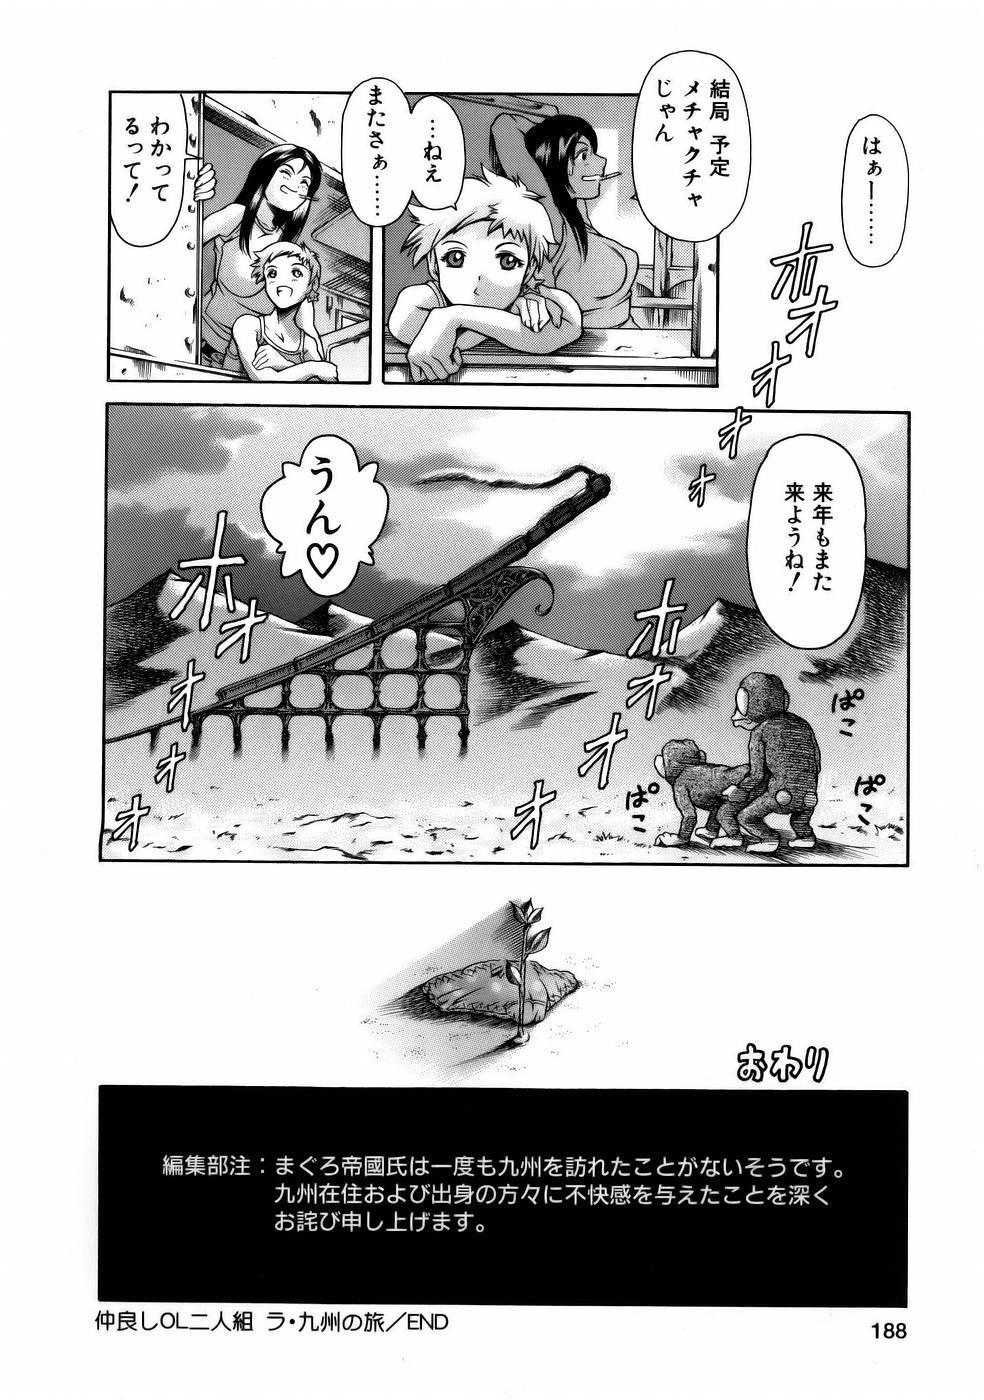 Manga Naze Nani Kyoushitsu 189